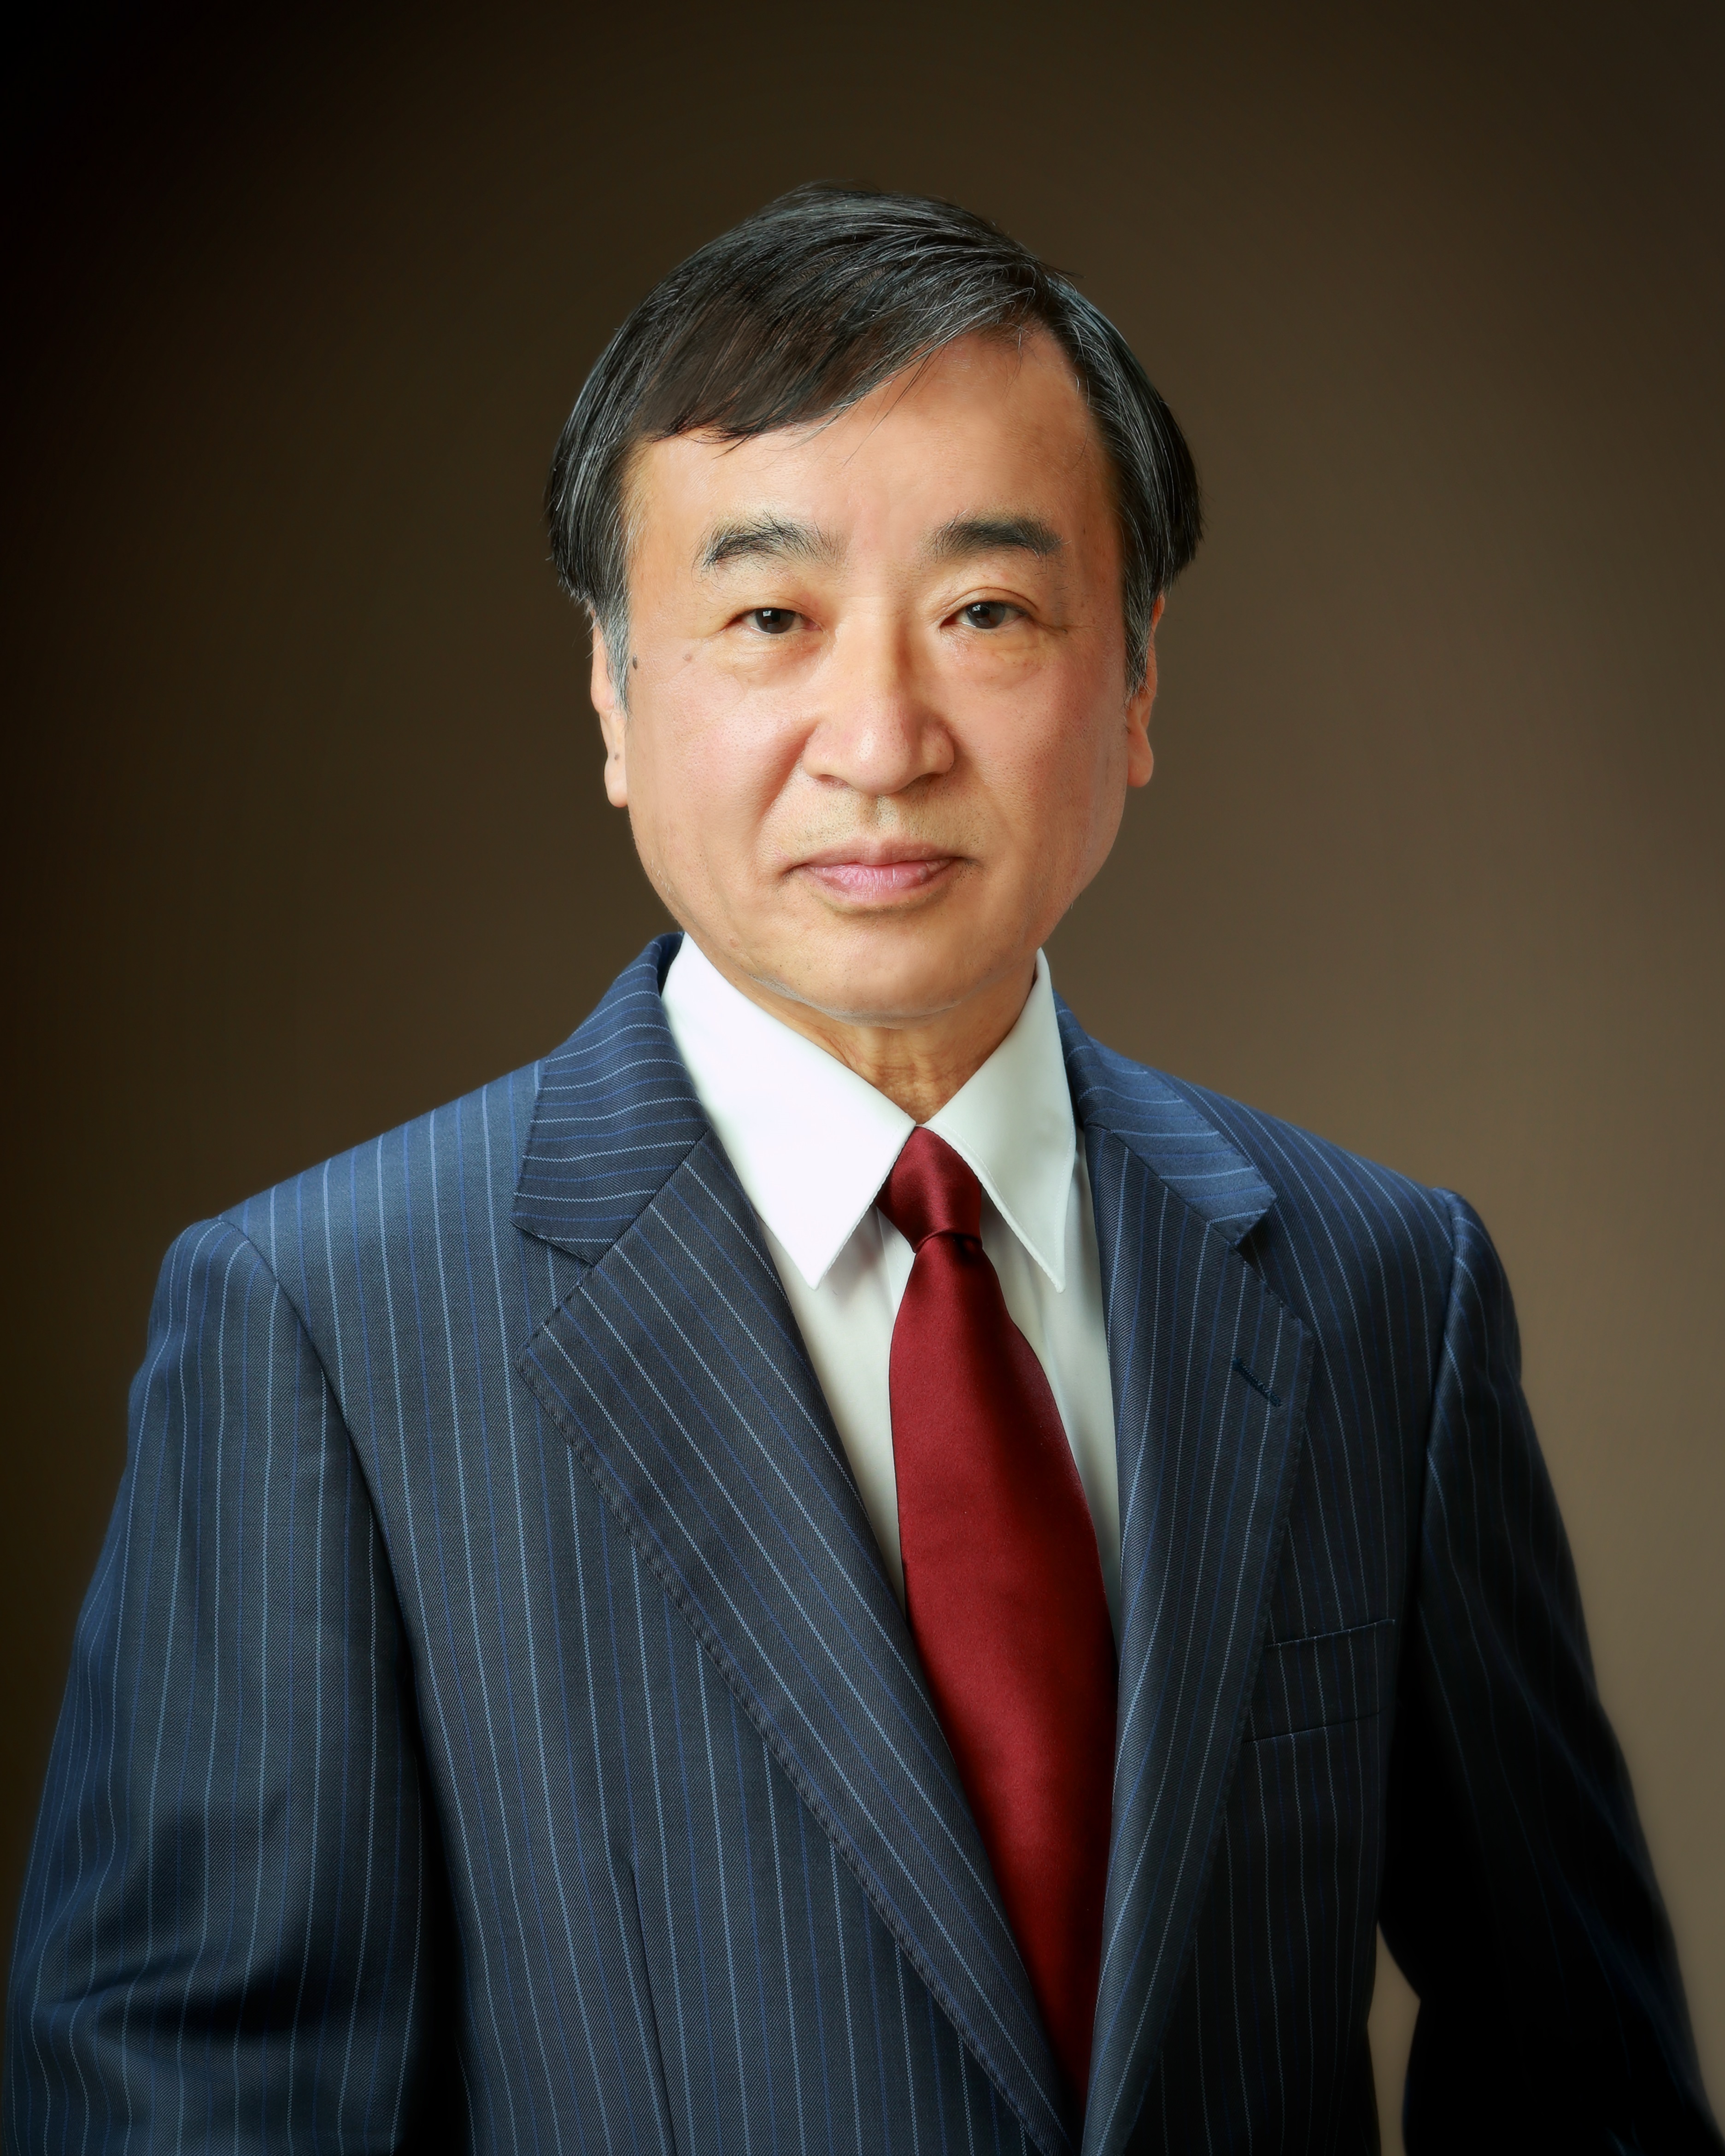 20200215-Prof. Yoshiki Chujo.jpg - 3.00 MB